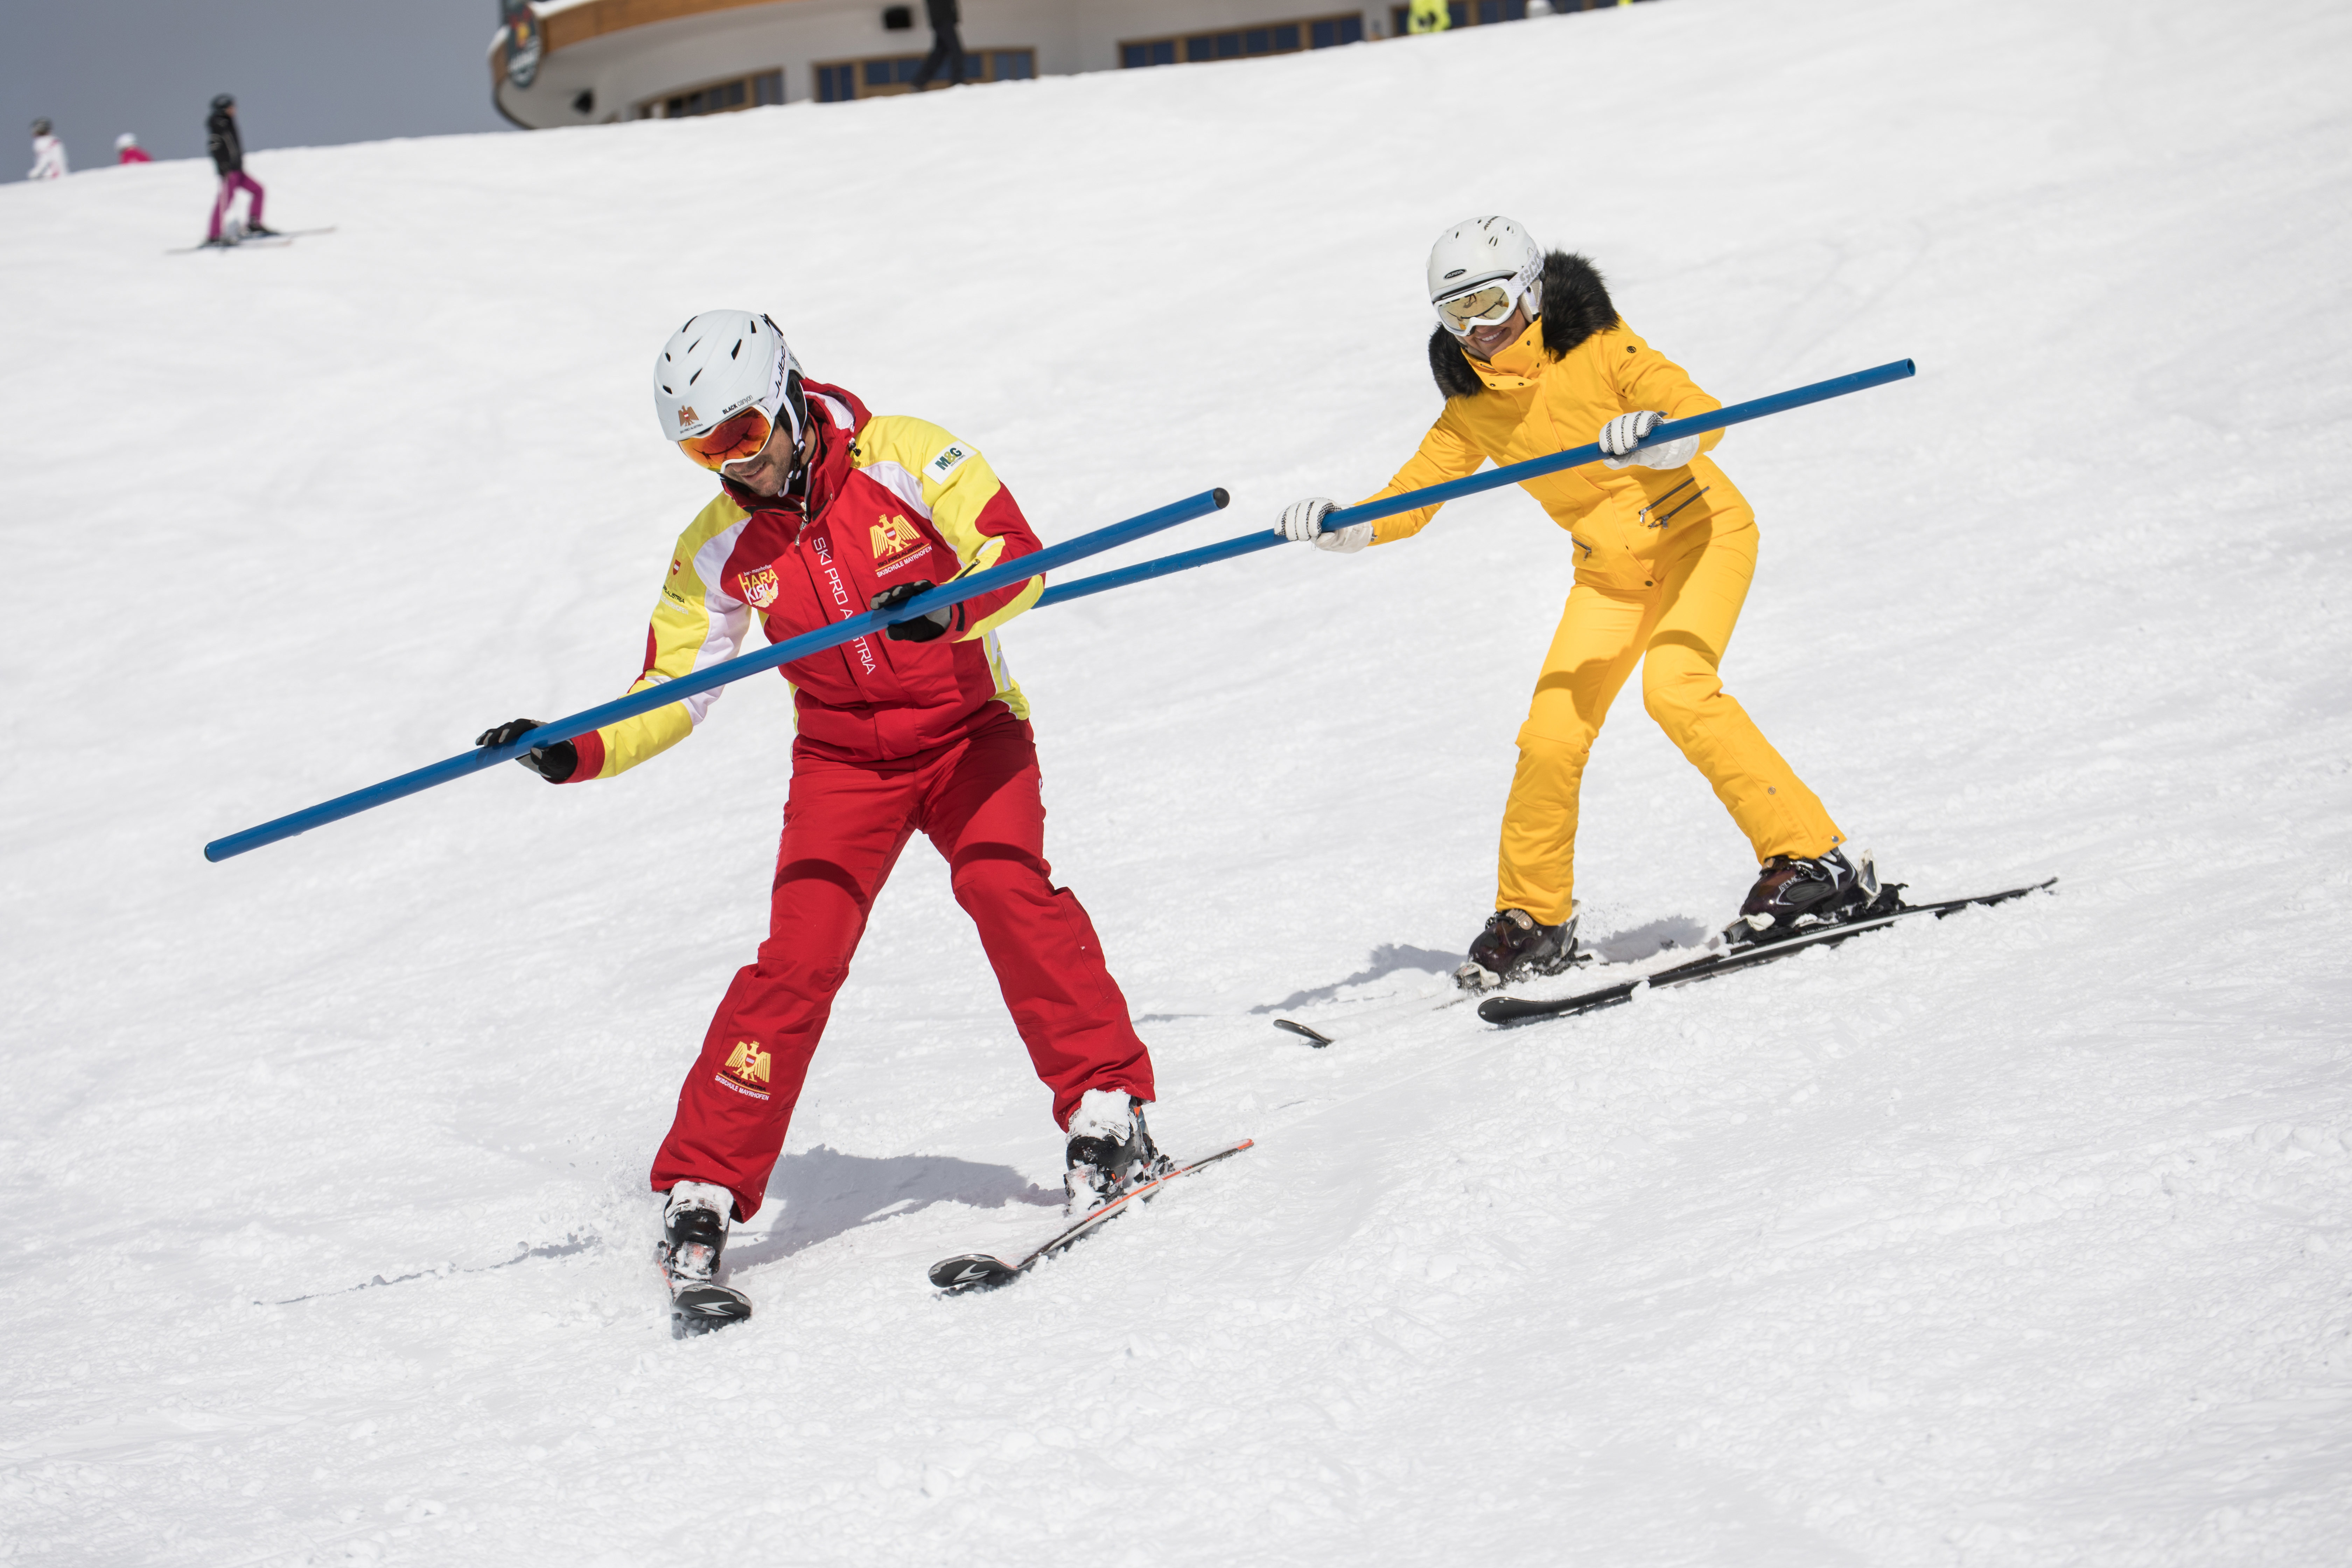 Ski school Ski Pro Austria Mayrhofen